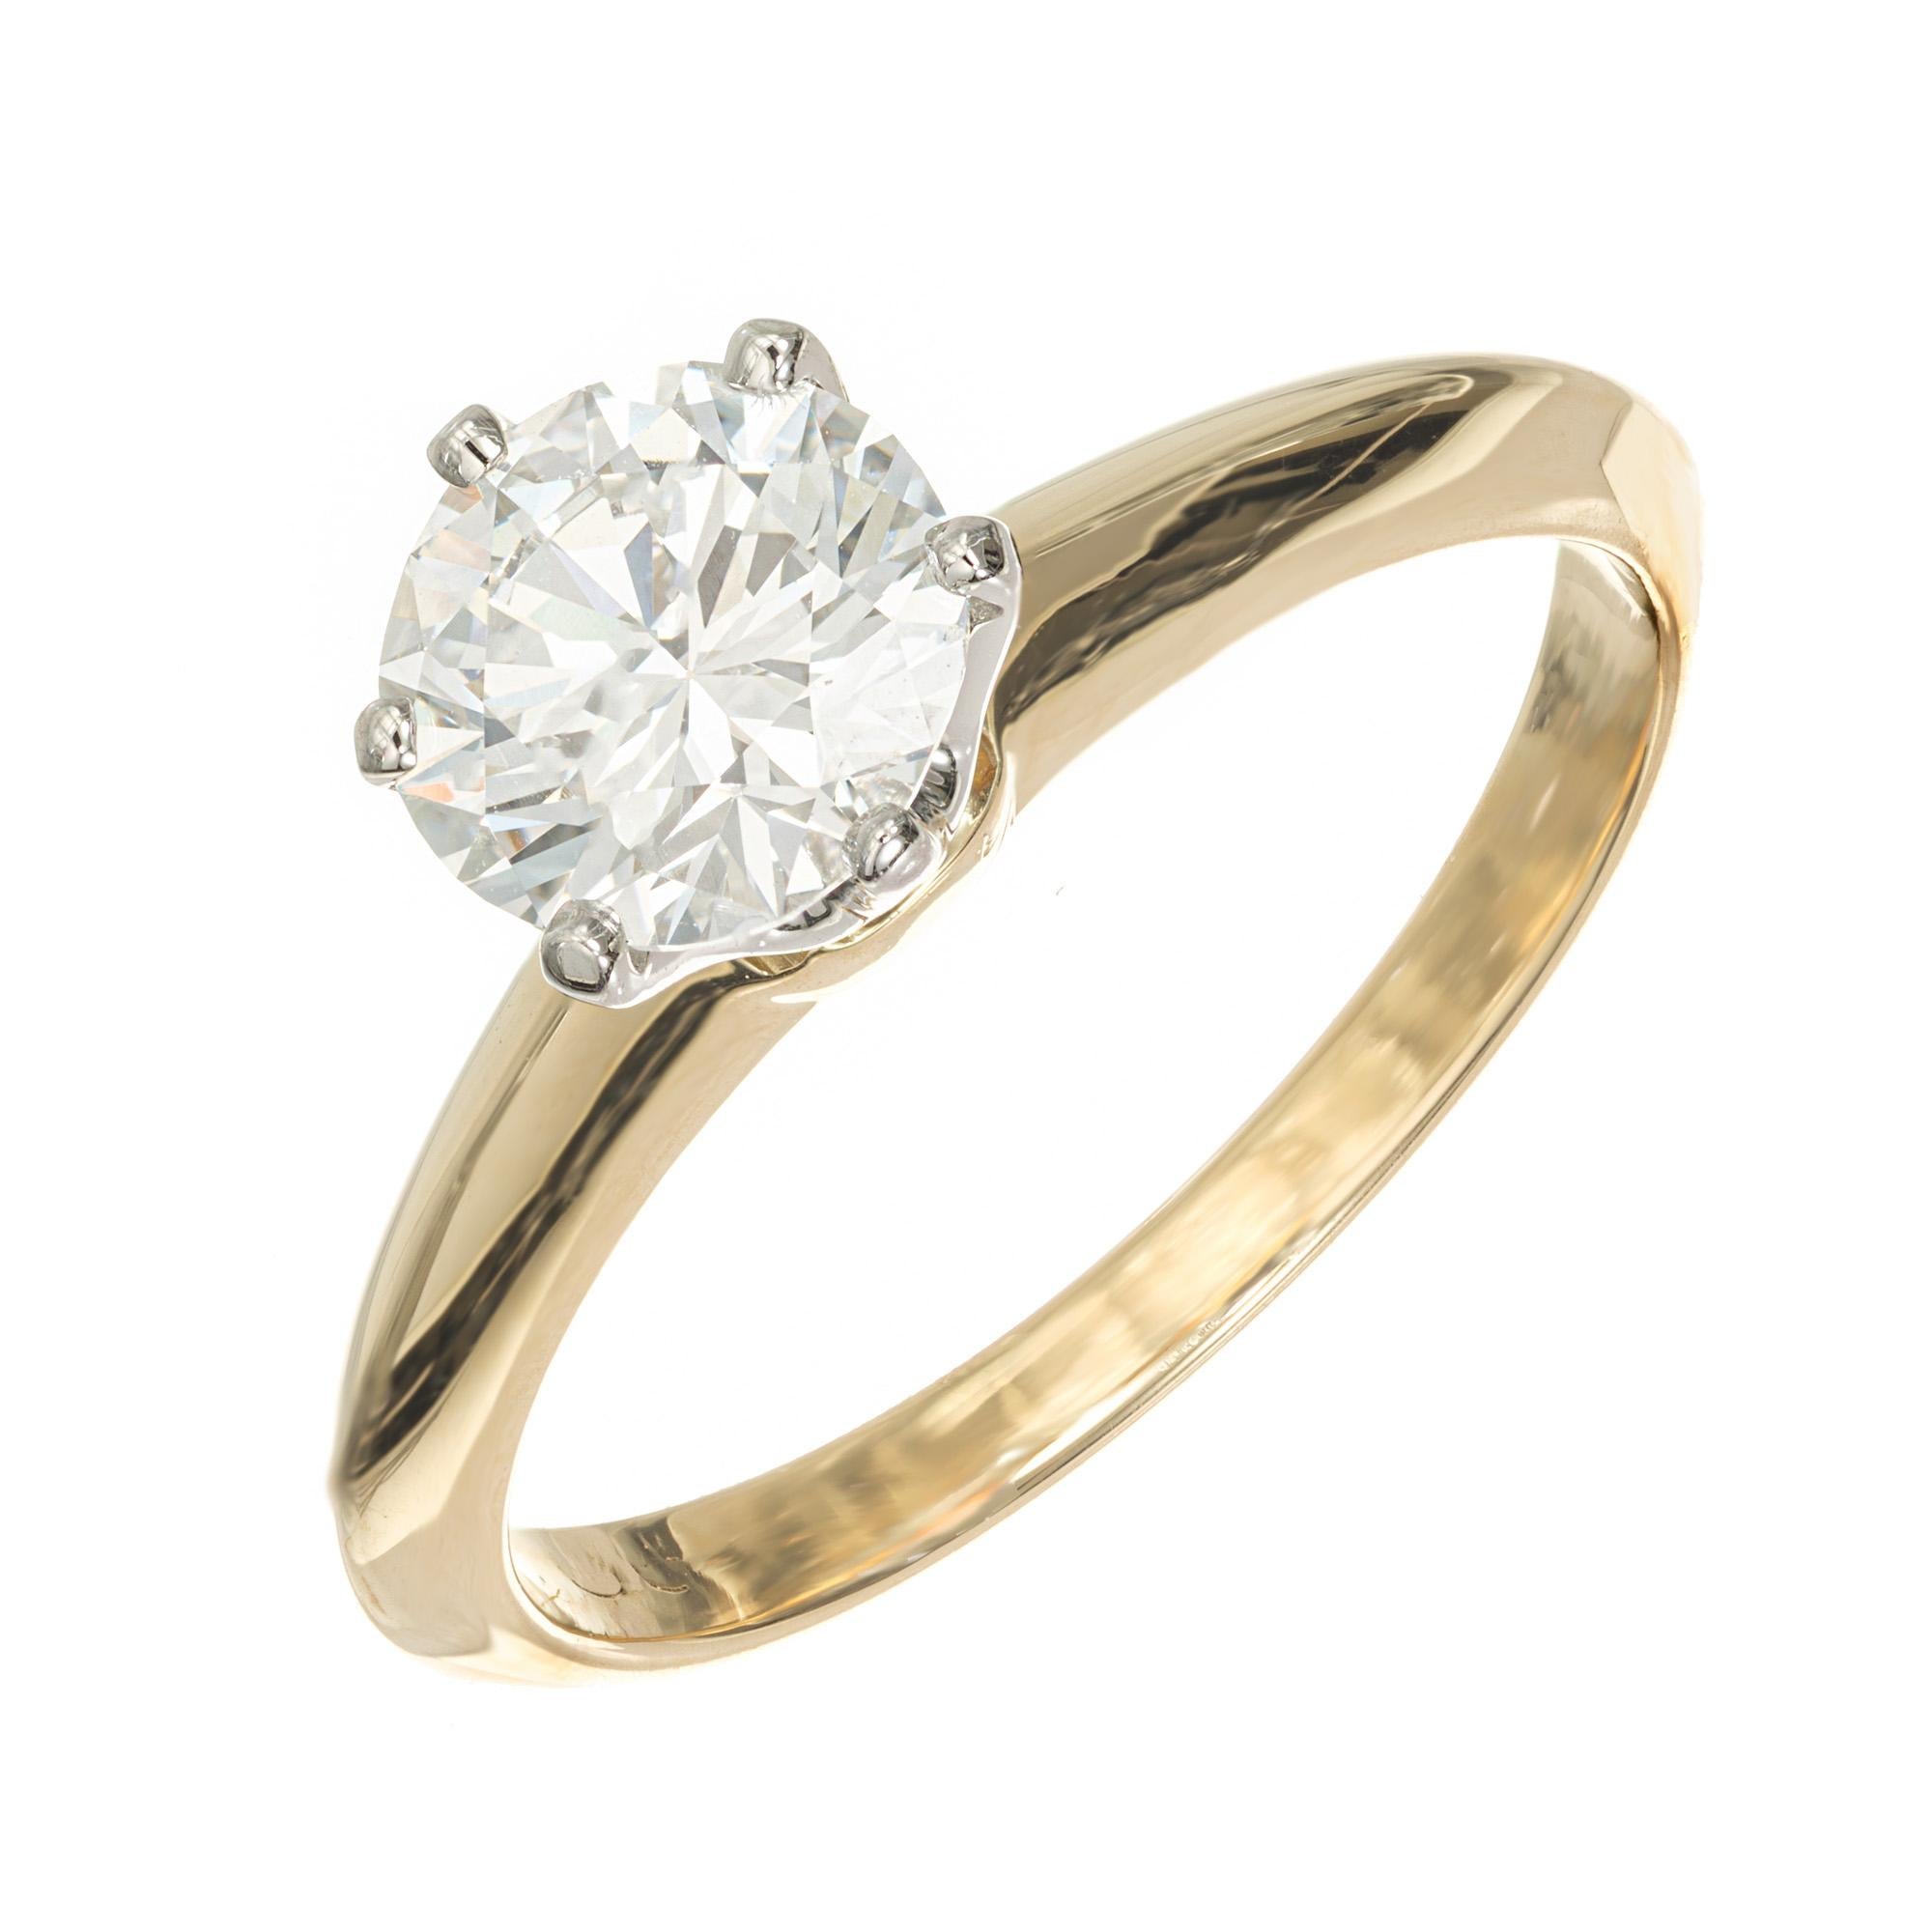 Bague de fiançailles solitaire en diamant de Tiffany & Co datant des années 1990. Diamant central rond brillant certifié GIA dans une couronne à six branches en platine sur une monture en or jaune 18k. Certifié par le GIA comme F (incolore) et VS2.